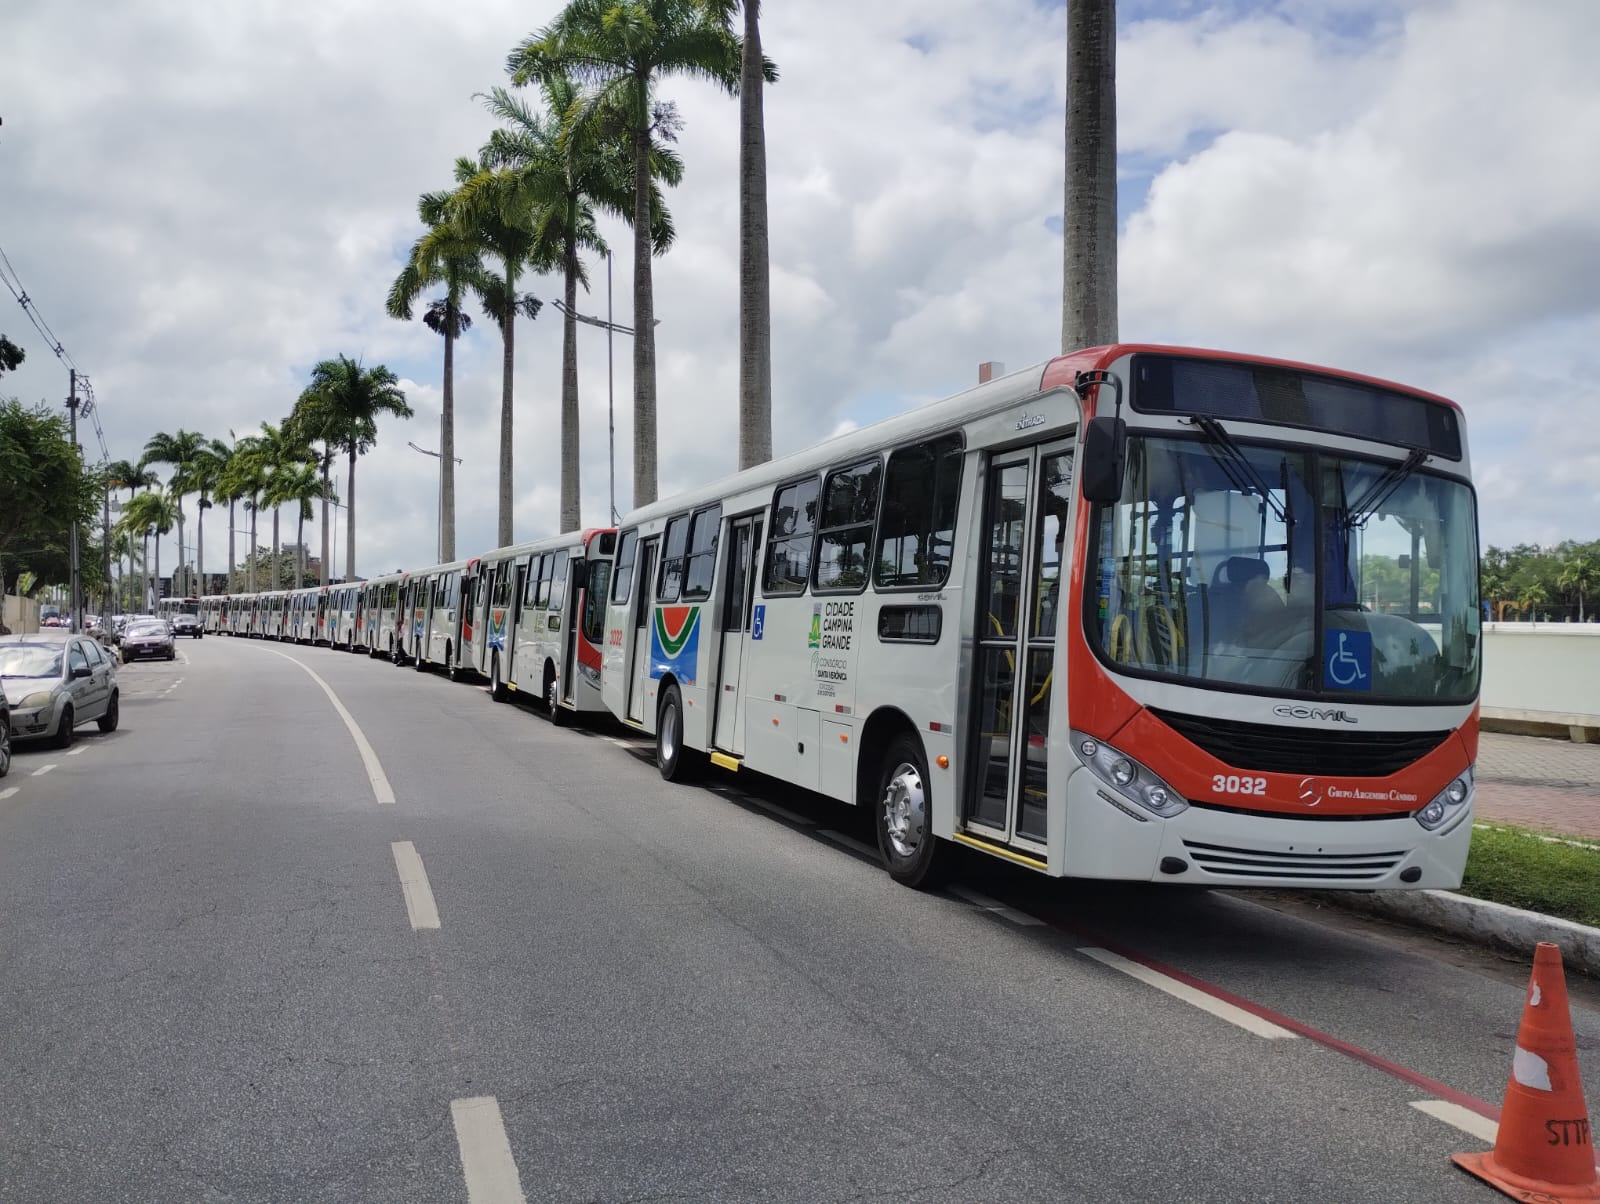 POR NOVA TARIFA: Em Campina Grande, empresas acatam exigências de Bruno: renovam a frota com 40 ônibus novos e seminovos, além de ampliar os horários